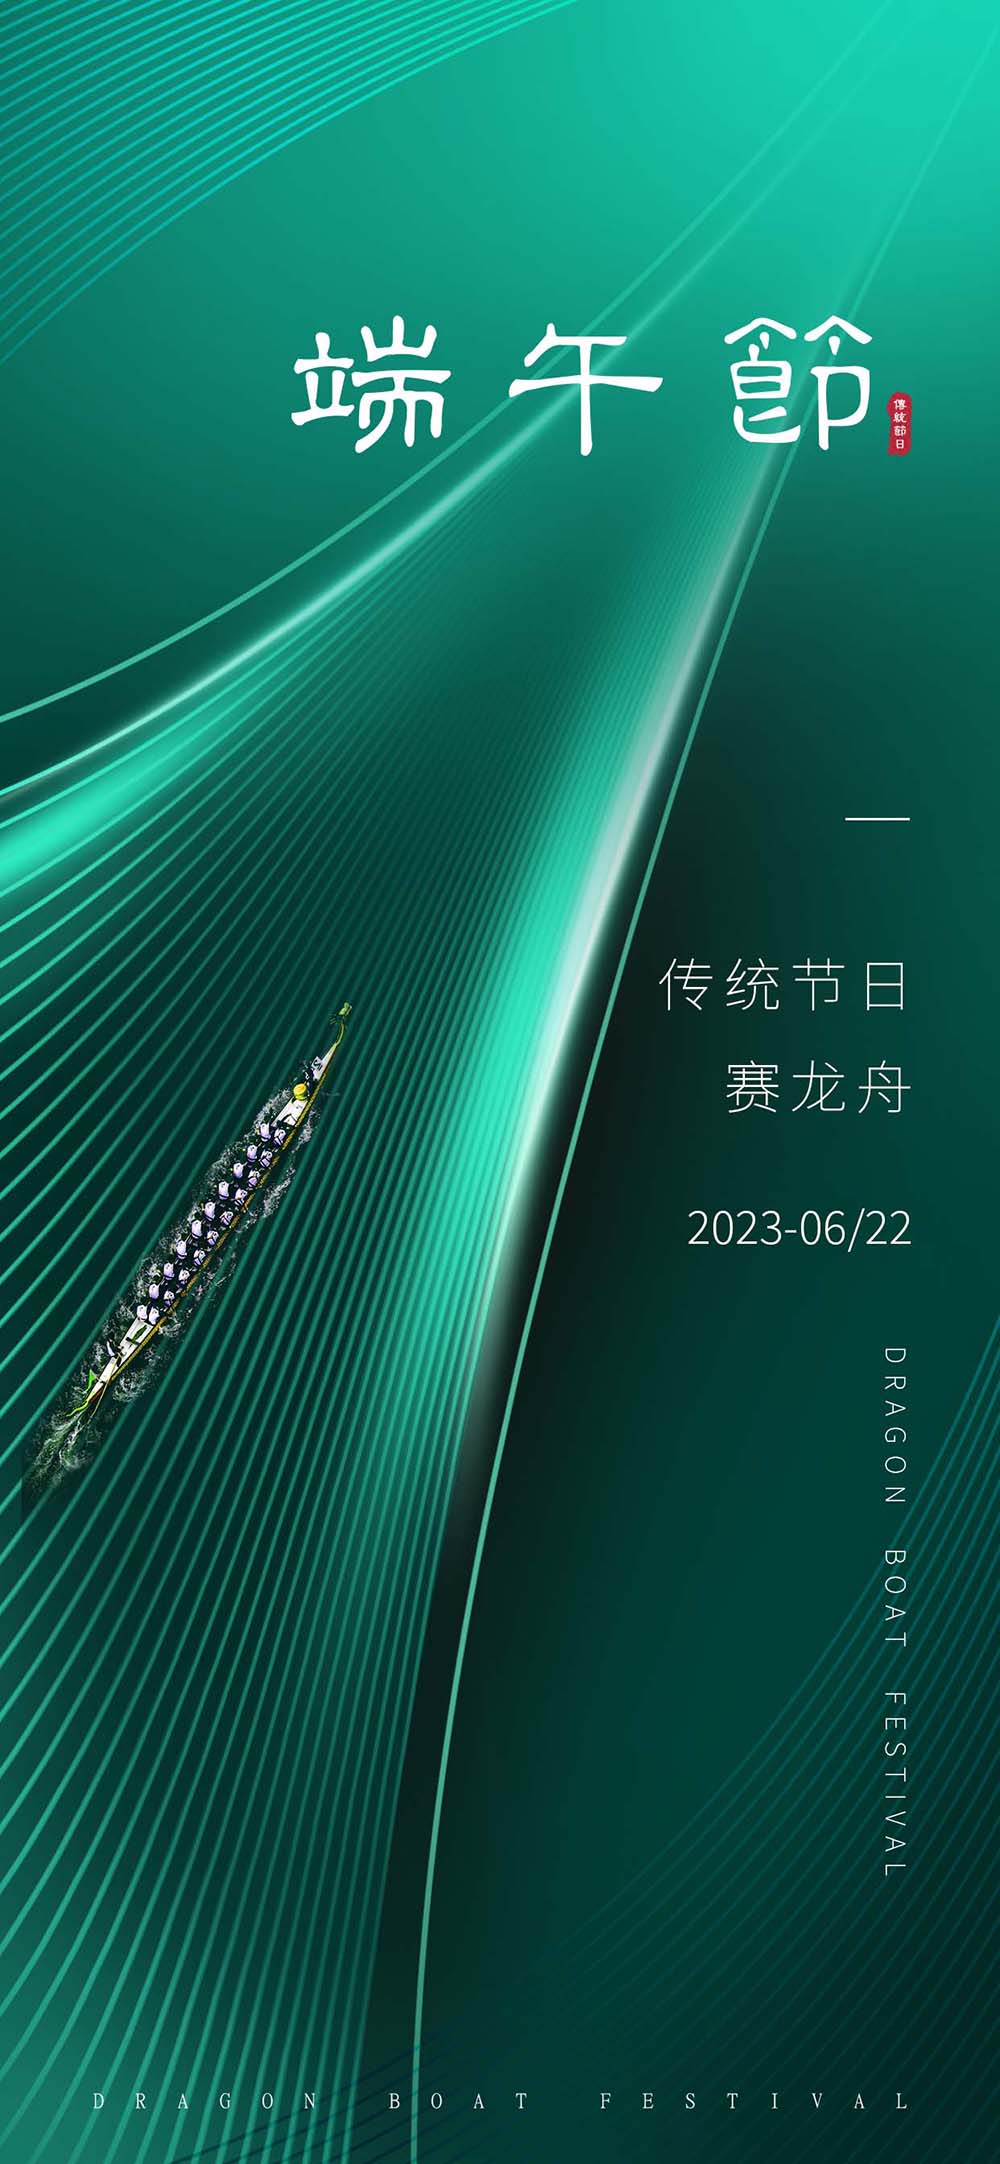 中国传统节日端午节赛龙舟海报设计